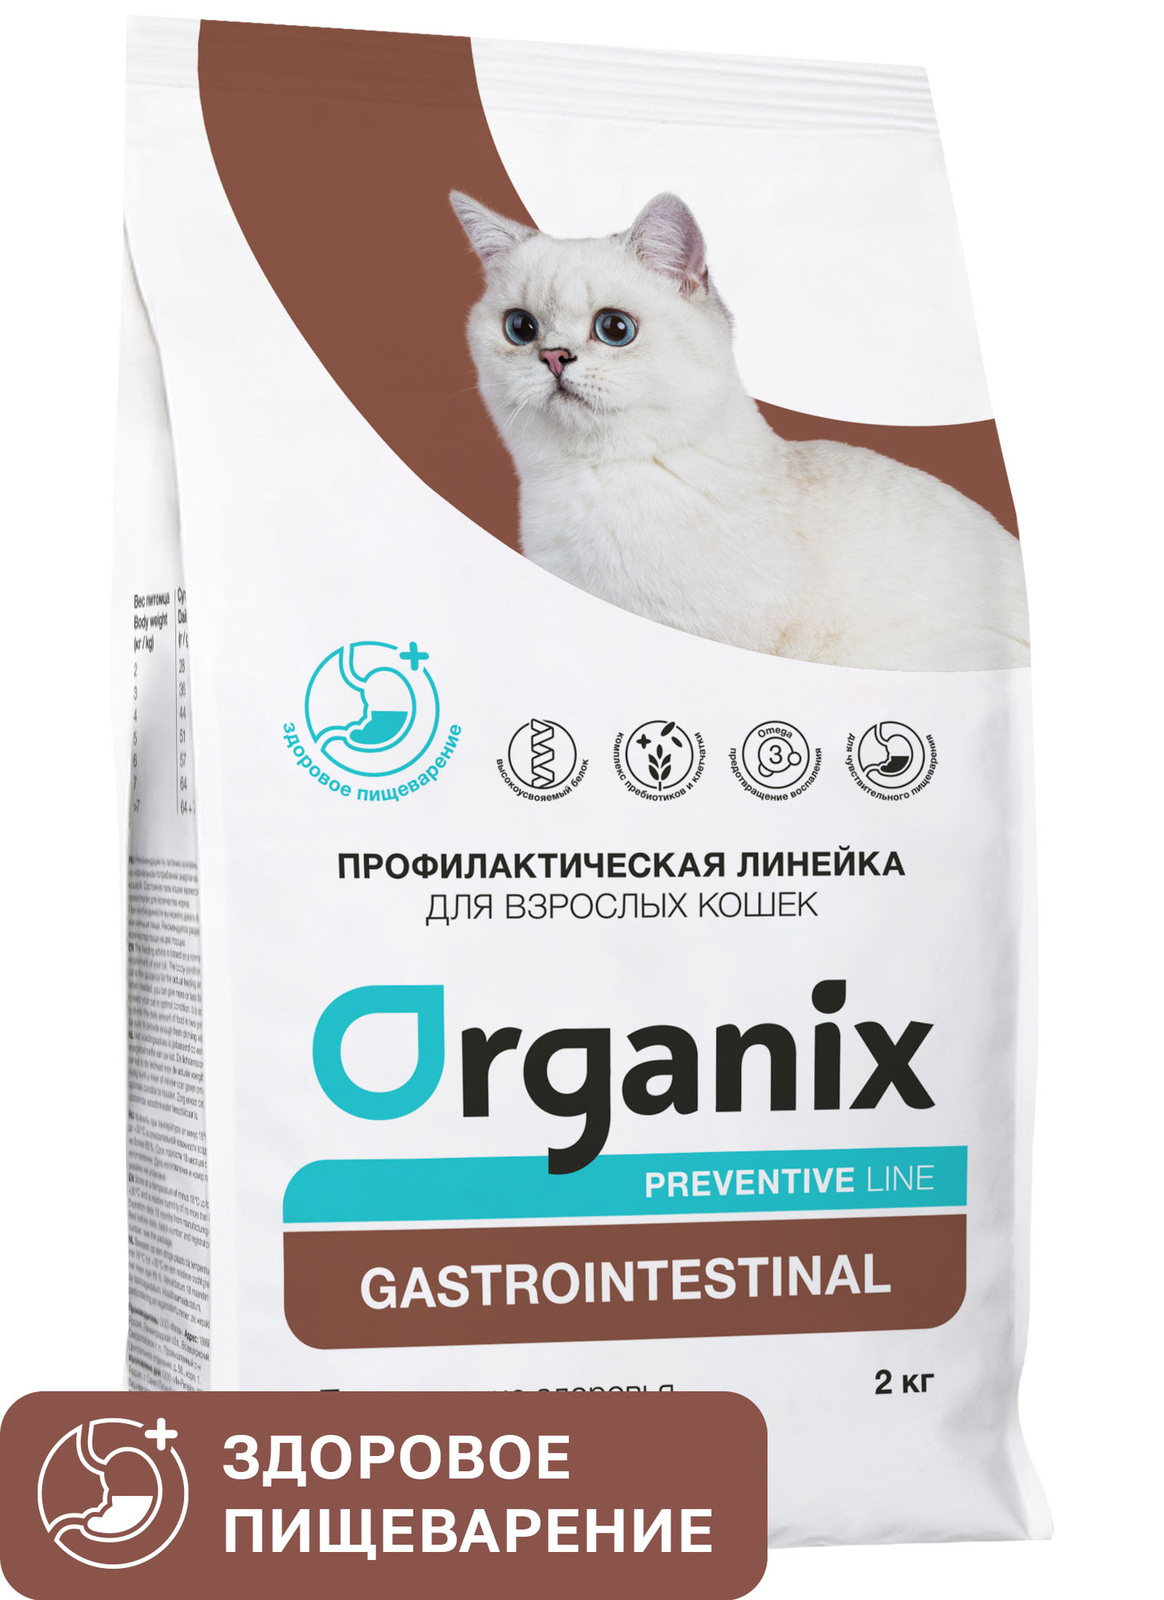 Organix Preventive Line Organix Preventive Line gastrointestinal сухой корм для кошек Поддержание здоровья пищеварительной системы (600 г)